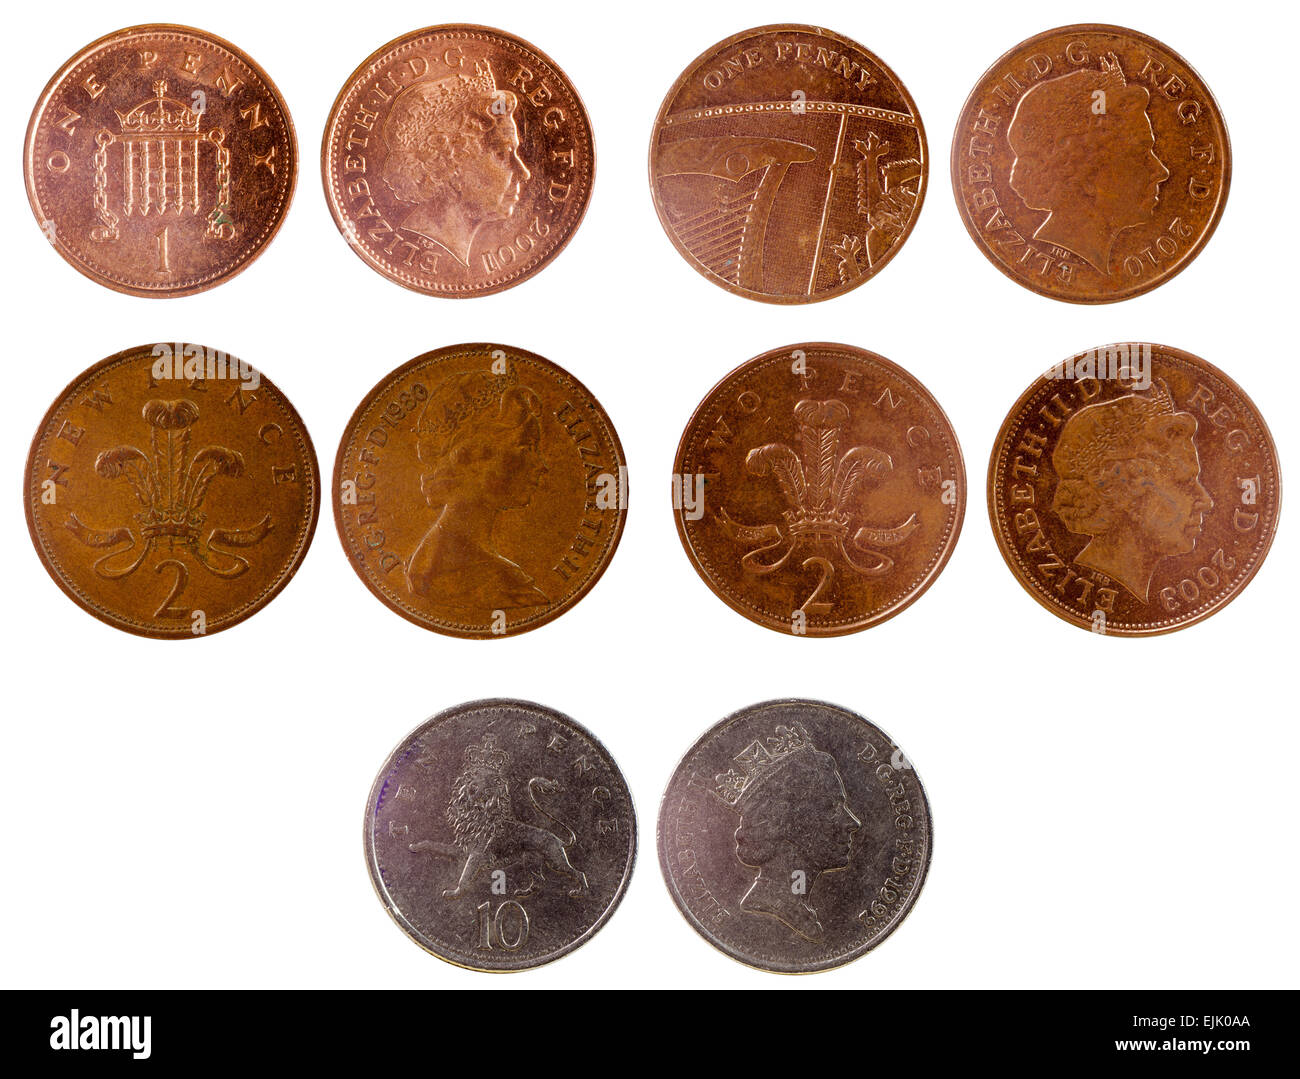 Britannique de différents coins isolé sur fond blanc Banque D'Images